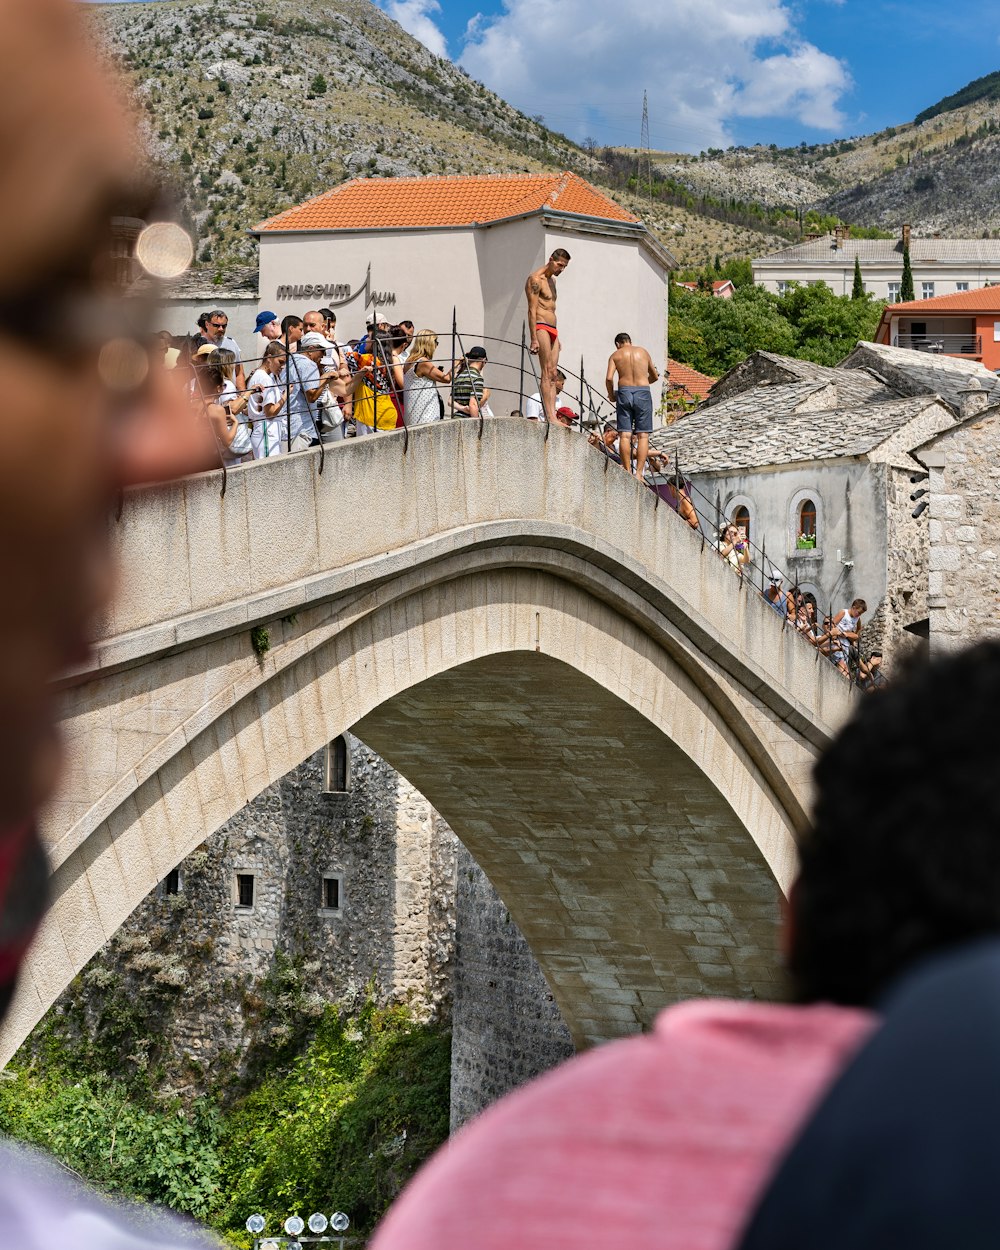 people walking on arch bridge during daytime